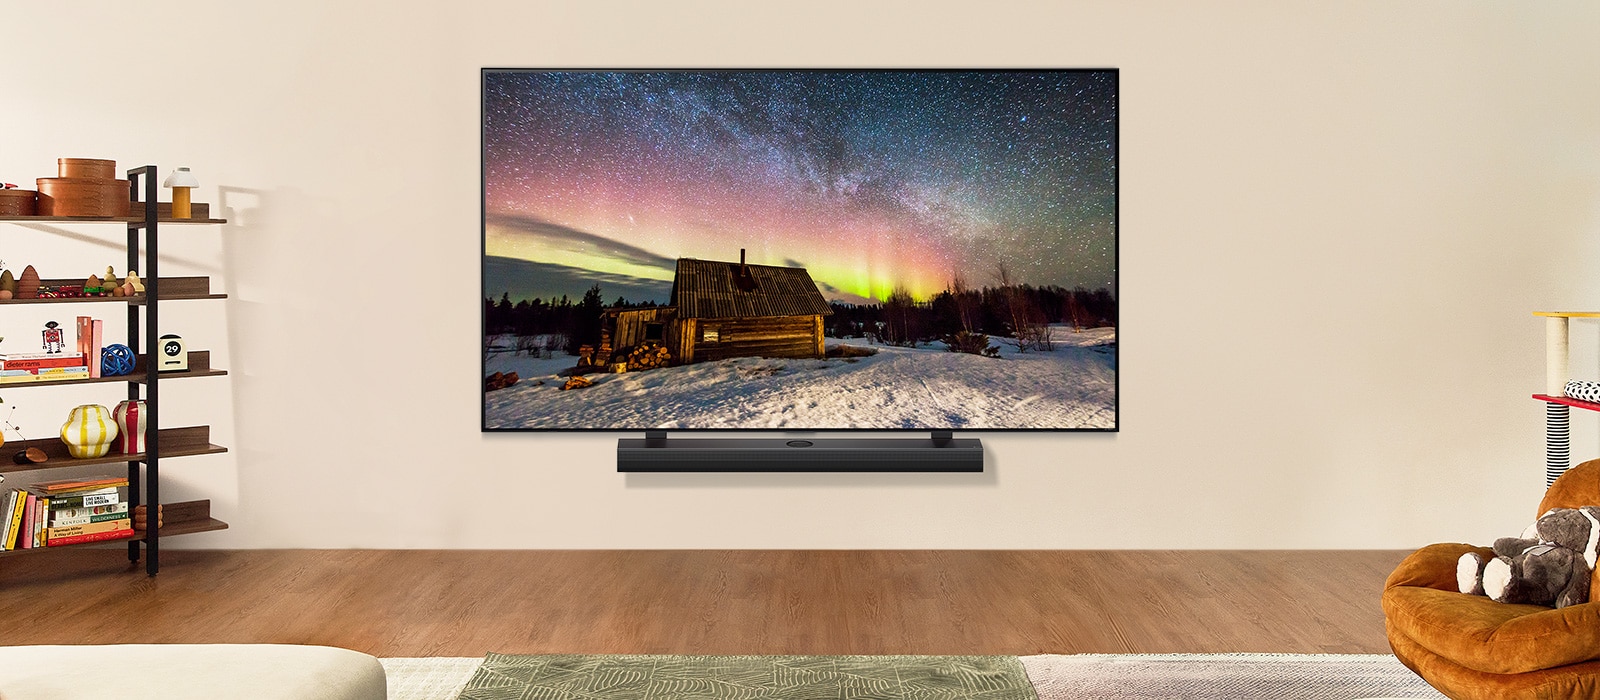 LG TV dan LG Soundbar di ruang tamu modern di siang hari. Gambar layar aurora borealis ditampilkan dengan tingkat kecerahan ideal.